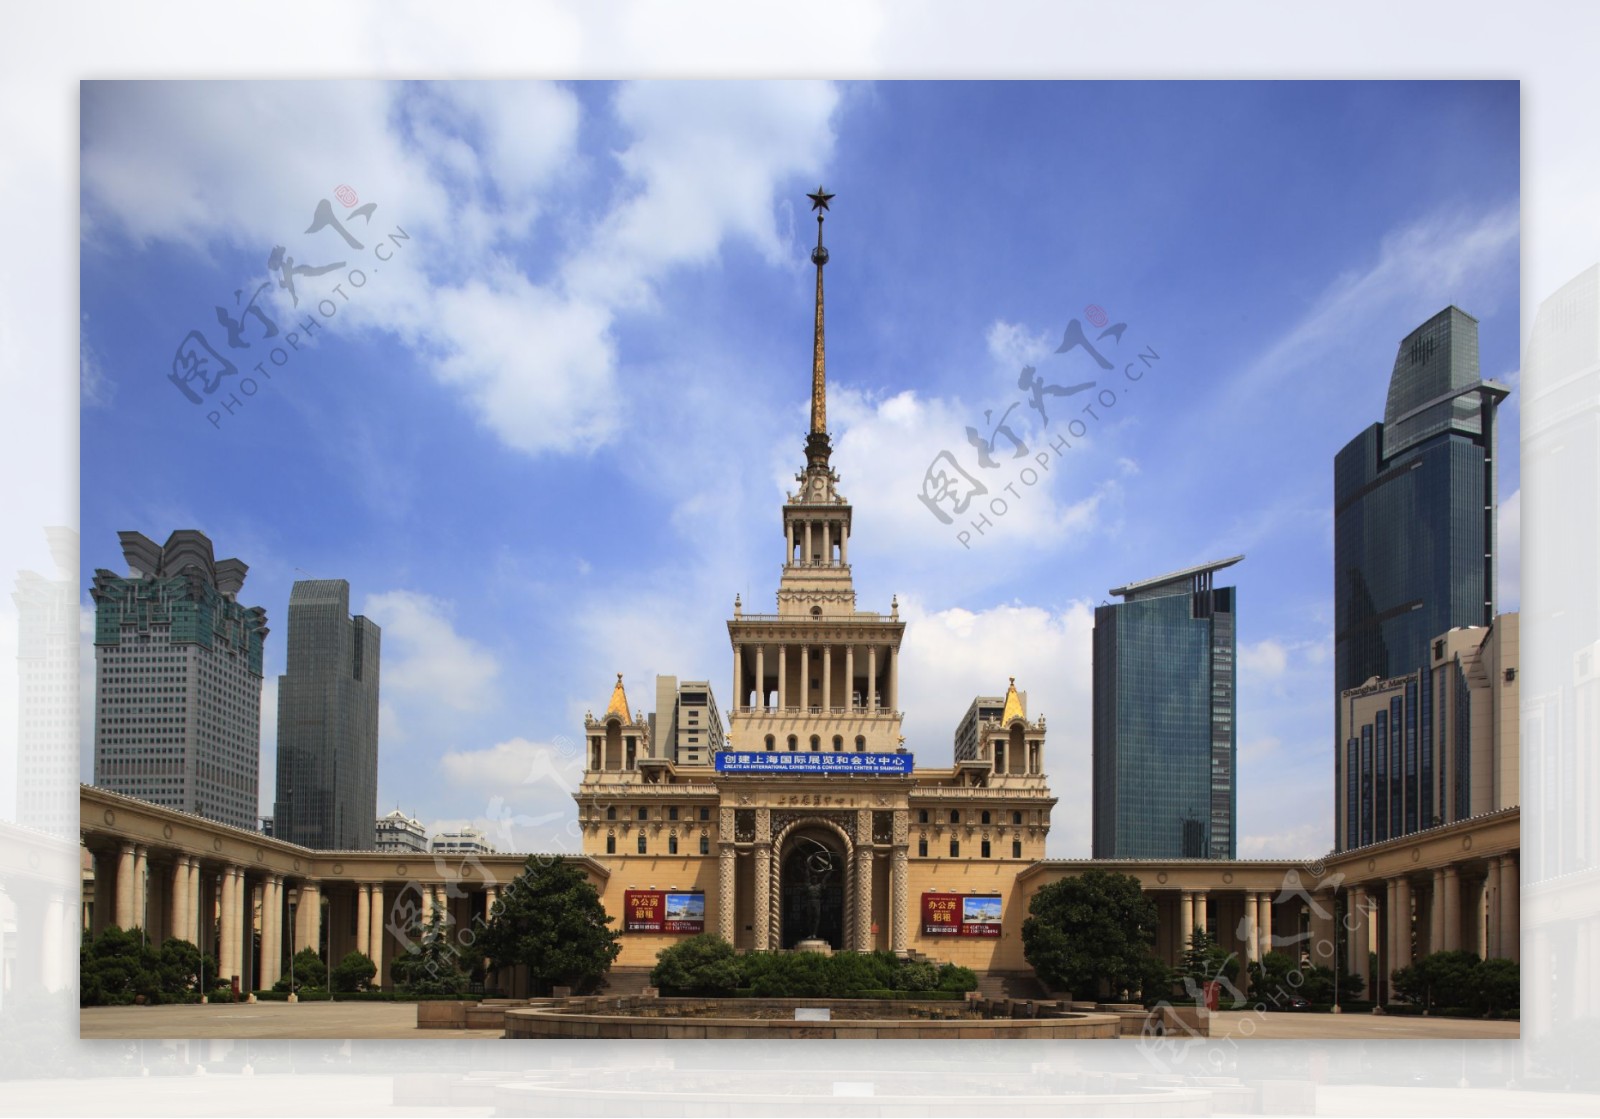 上海展览馆图片